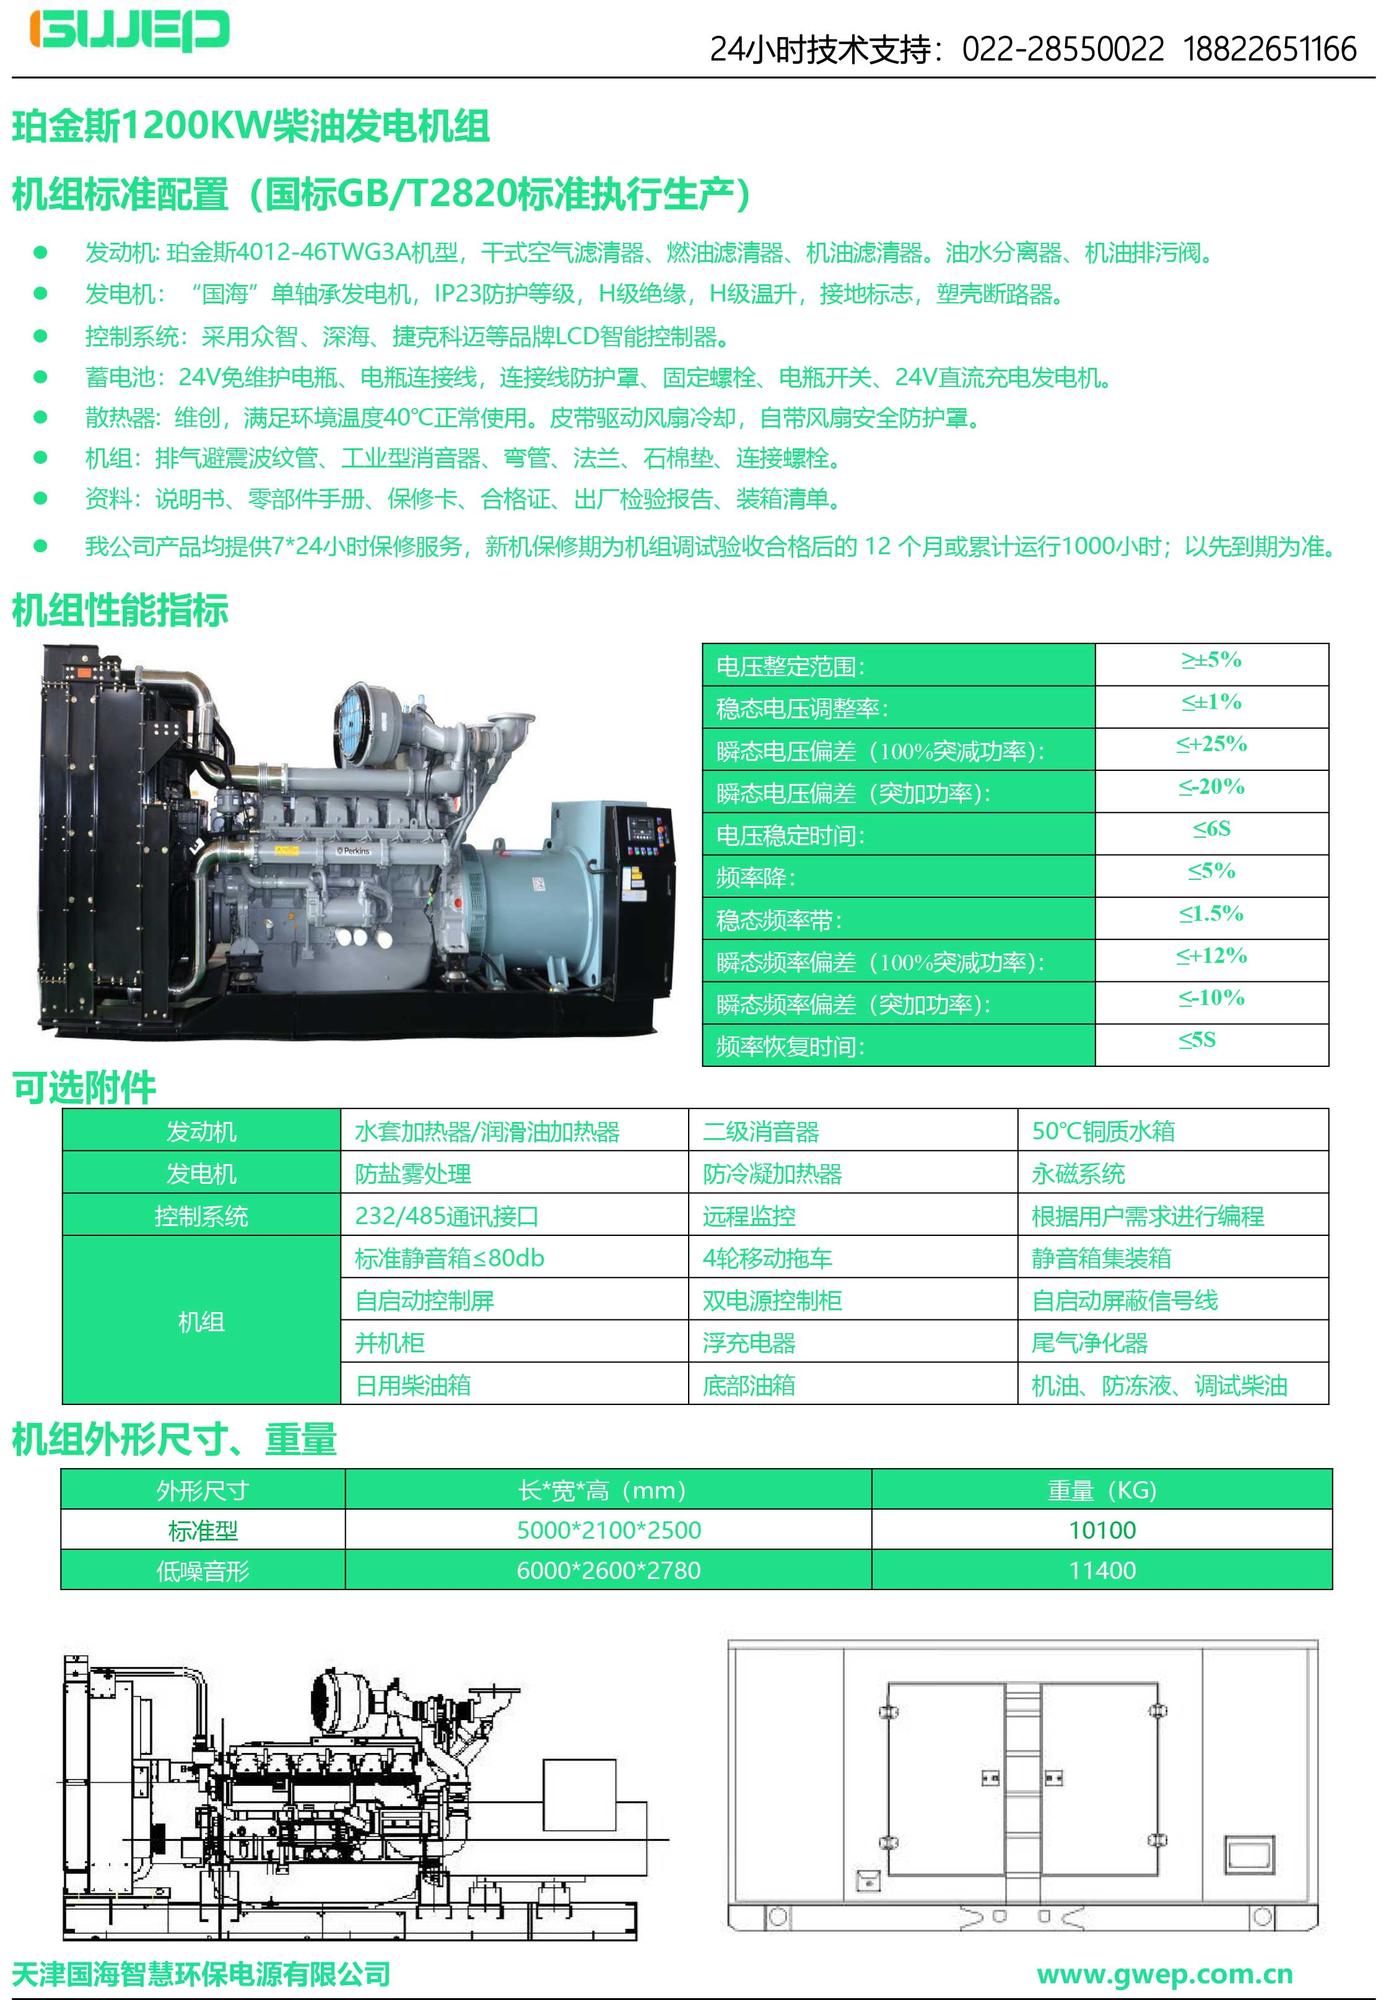 珀金斯1200KW发电机组技术资料-1.jpg